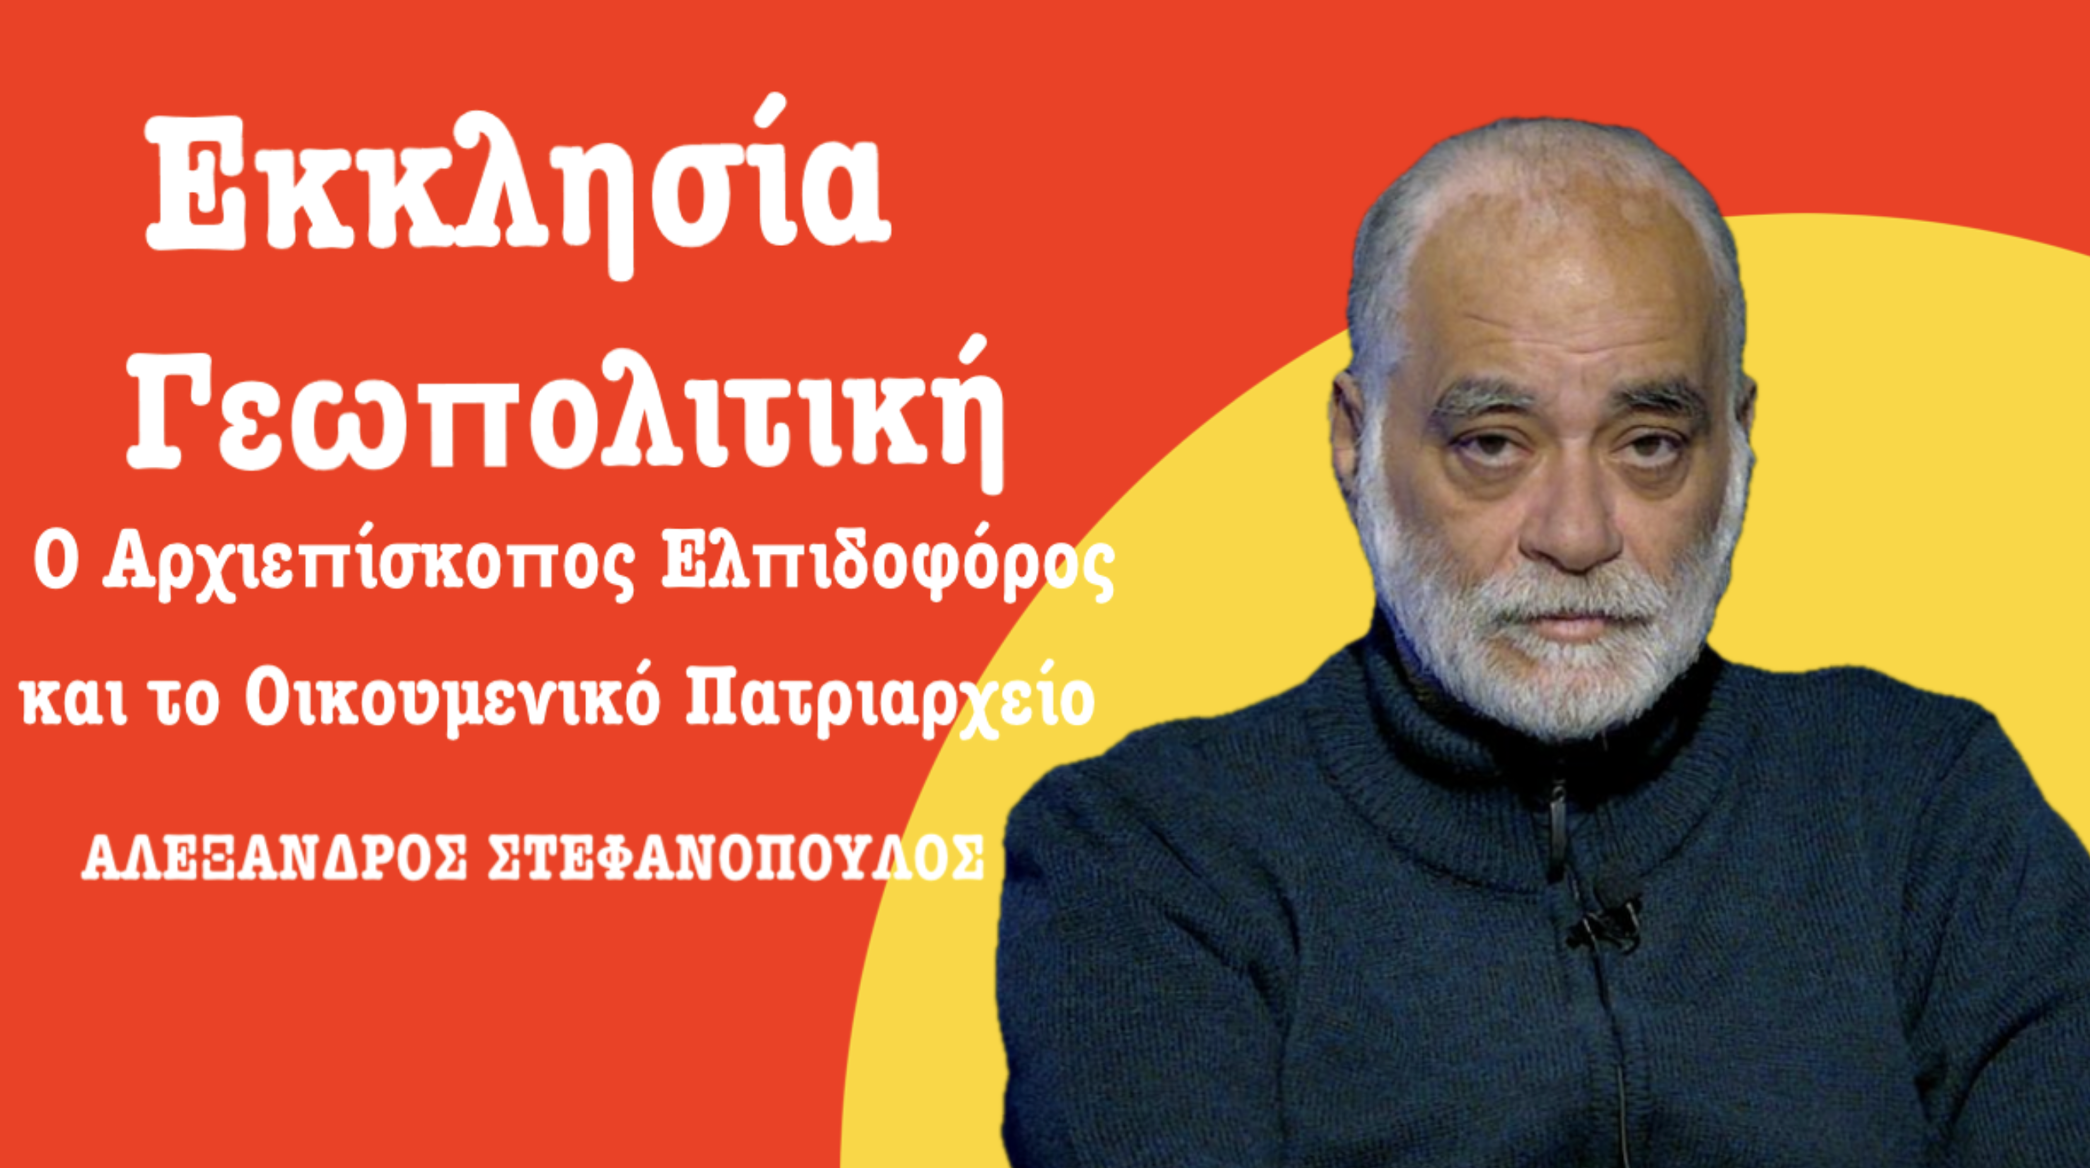 Εκκλησία και Γεωπολιτική: Ο Αλ. Στεφανόπουλος εξηγεί και αποκαλύπτει!